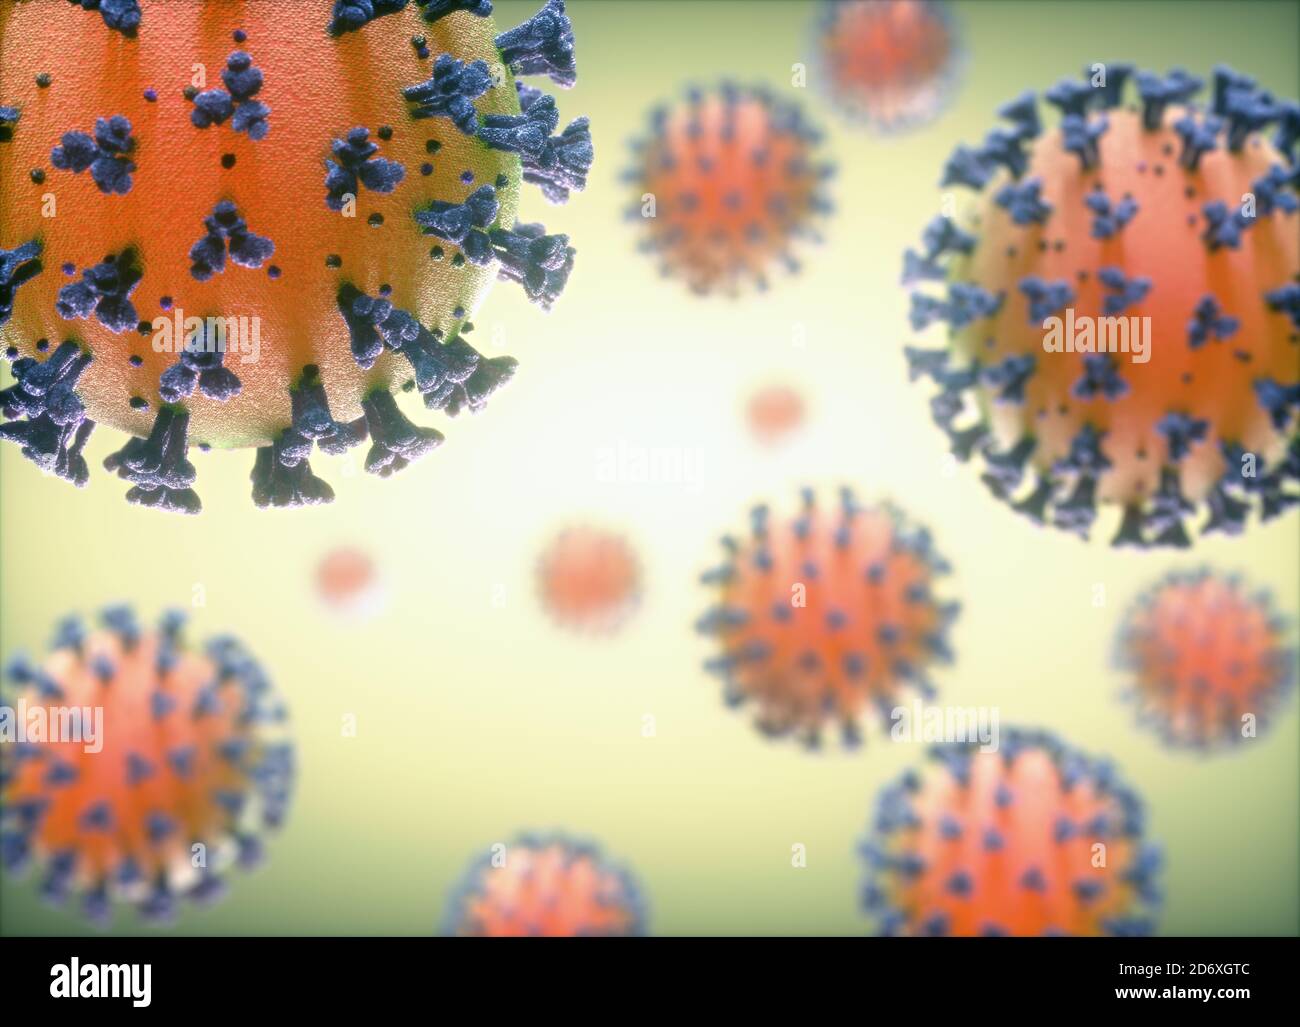 COVID-19, Coronavirus, grupo de virus en un concepto de pandemia mundial. Foto de stock